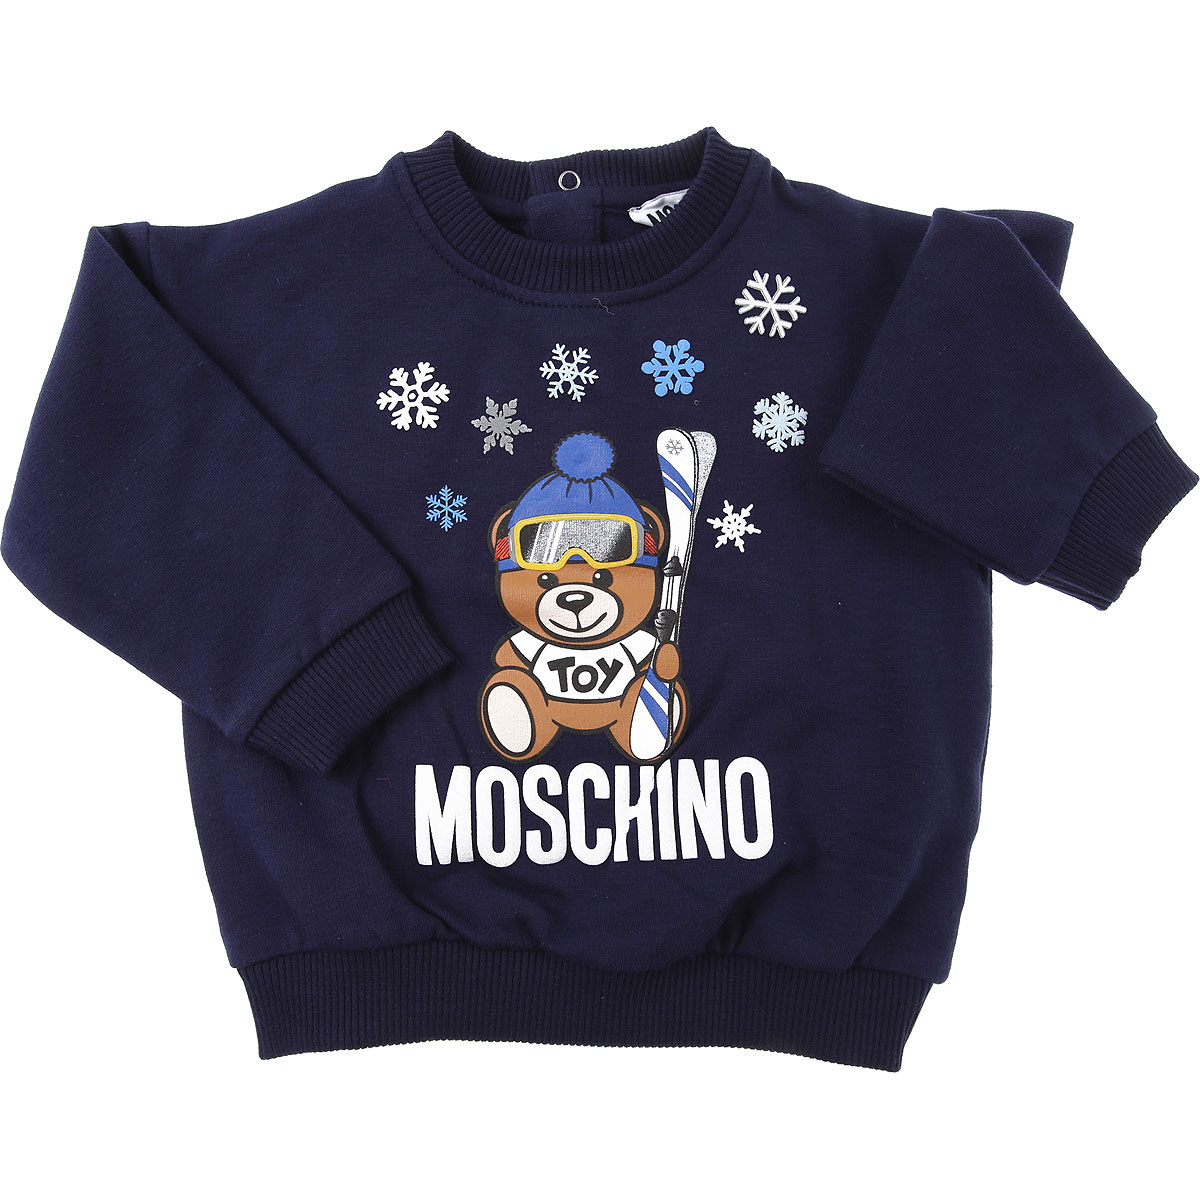 Moschino Baby Sweatshirt & Kapuzenpullover für Jungen Günstig im Sale, Blau, Baumwolle, 2017, 12 M 24M 2Y 3Y 6M 9M